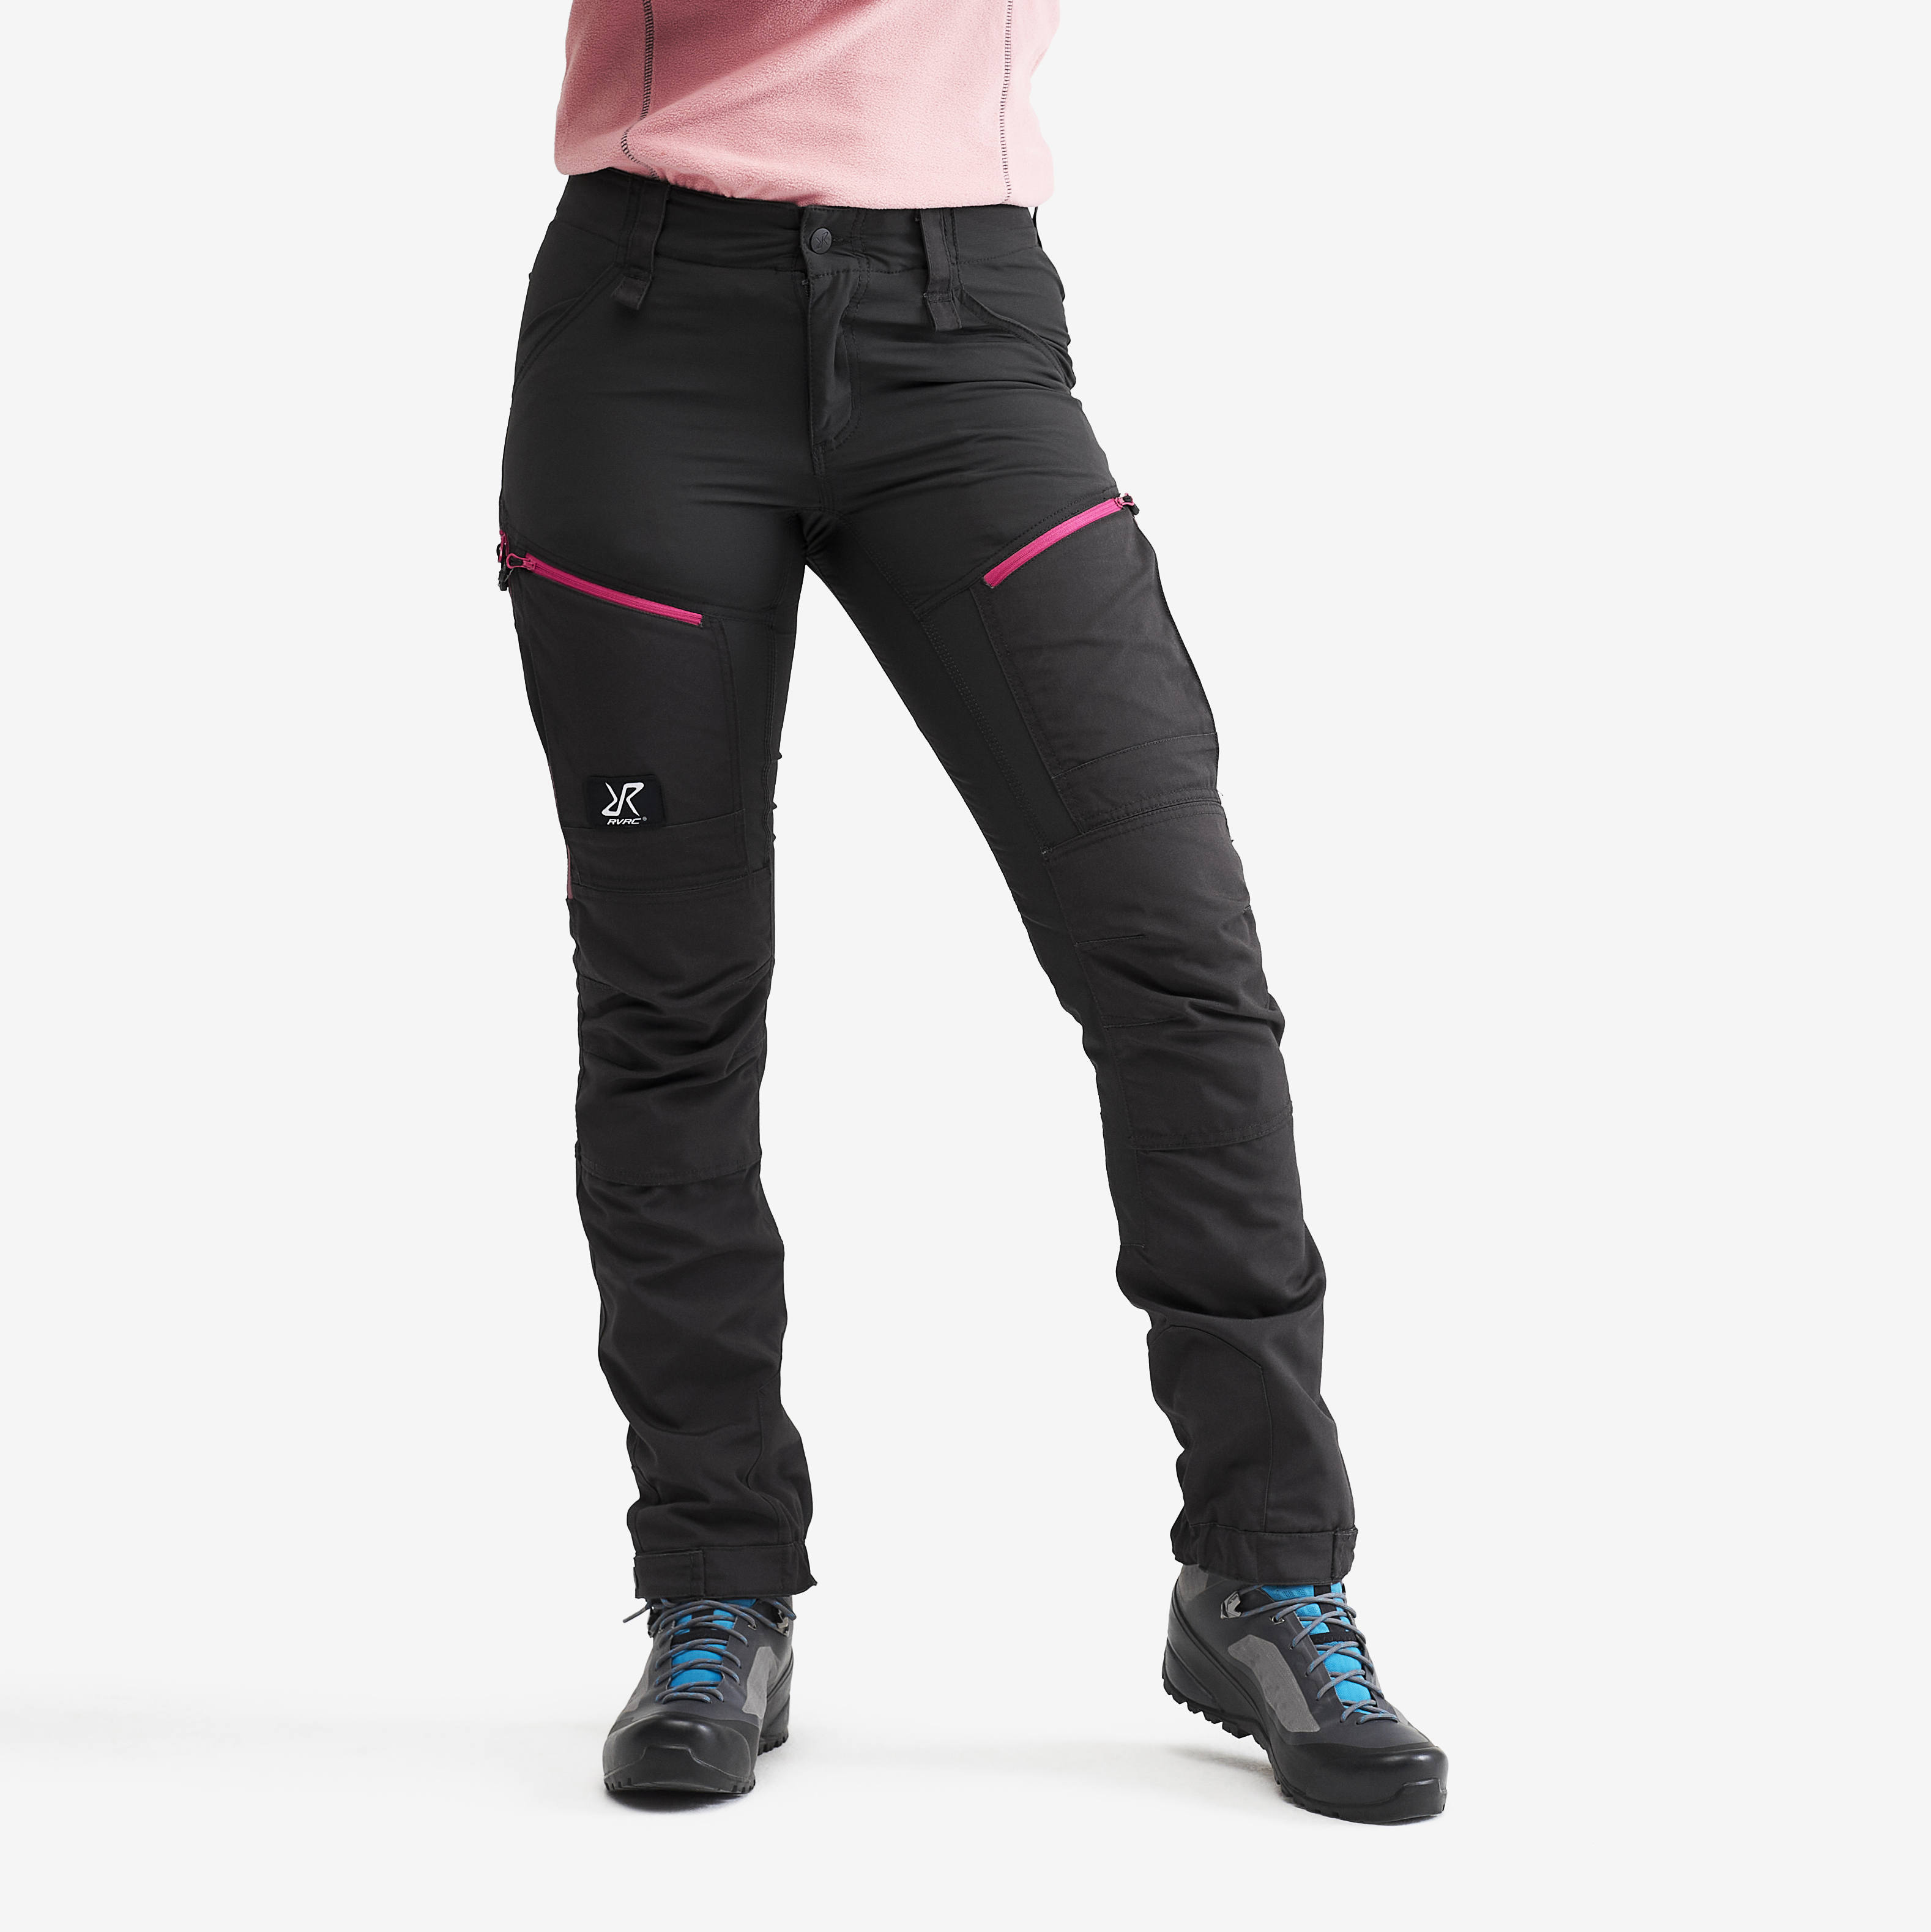 RVRC GP Pro Pants Grey/Pink Dame